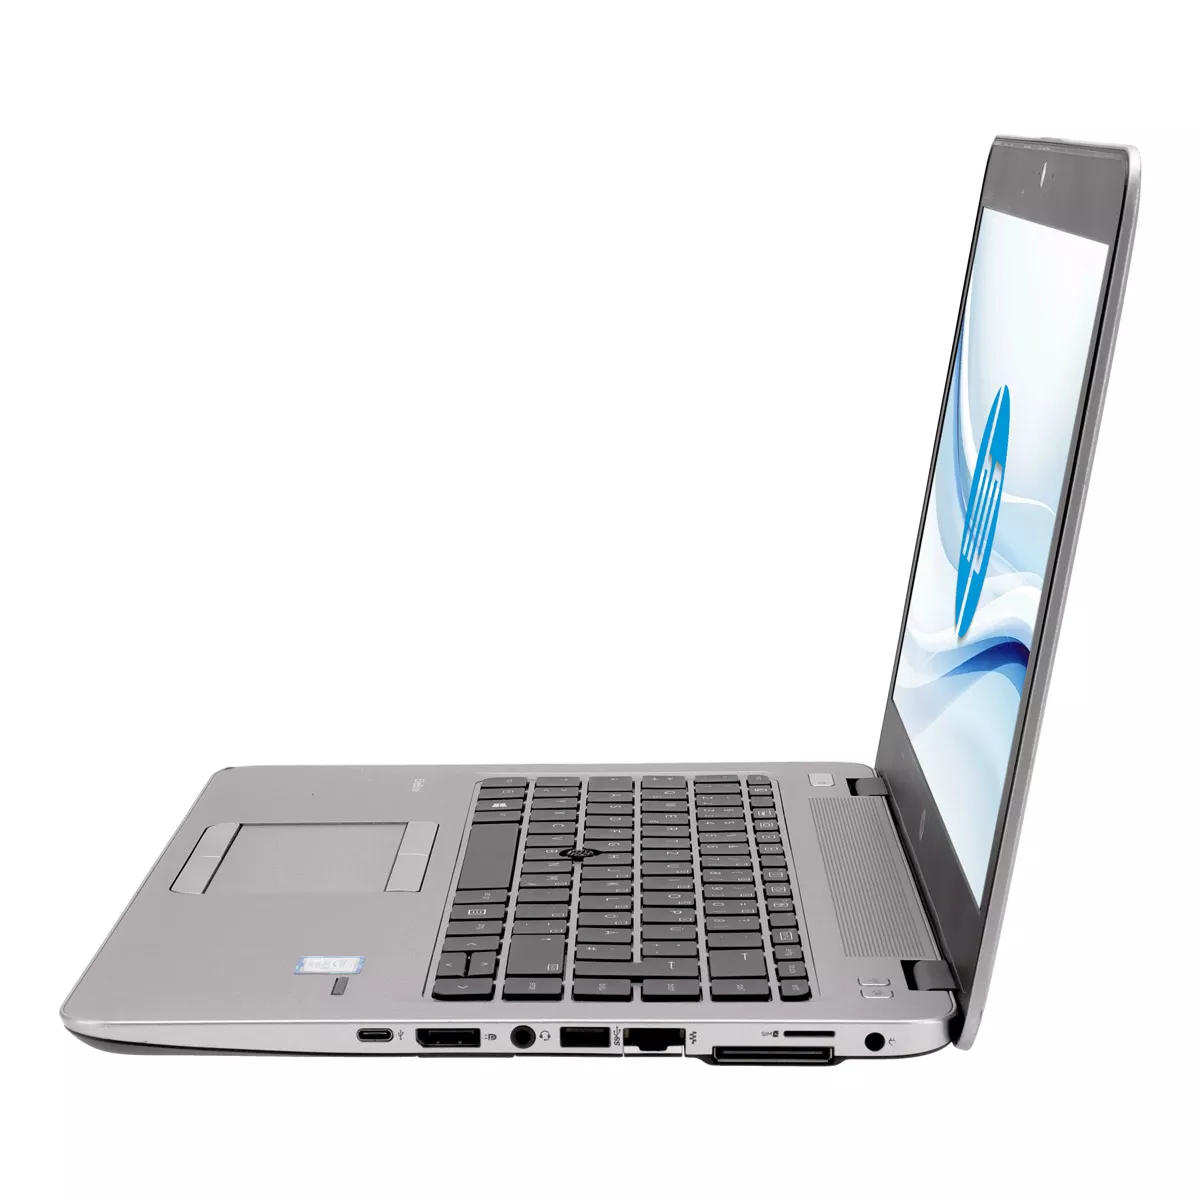 HP EliteBook 840 G4 Core i5 7300U Full-HD 8 GB DDR4 240 GB M.2 SSD A+